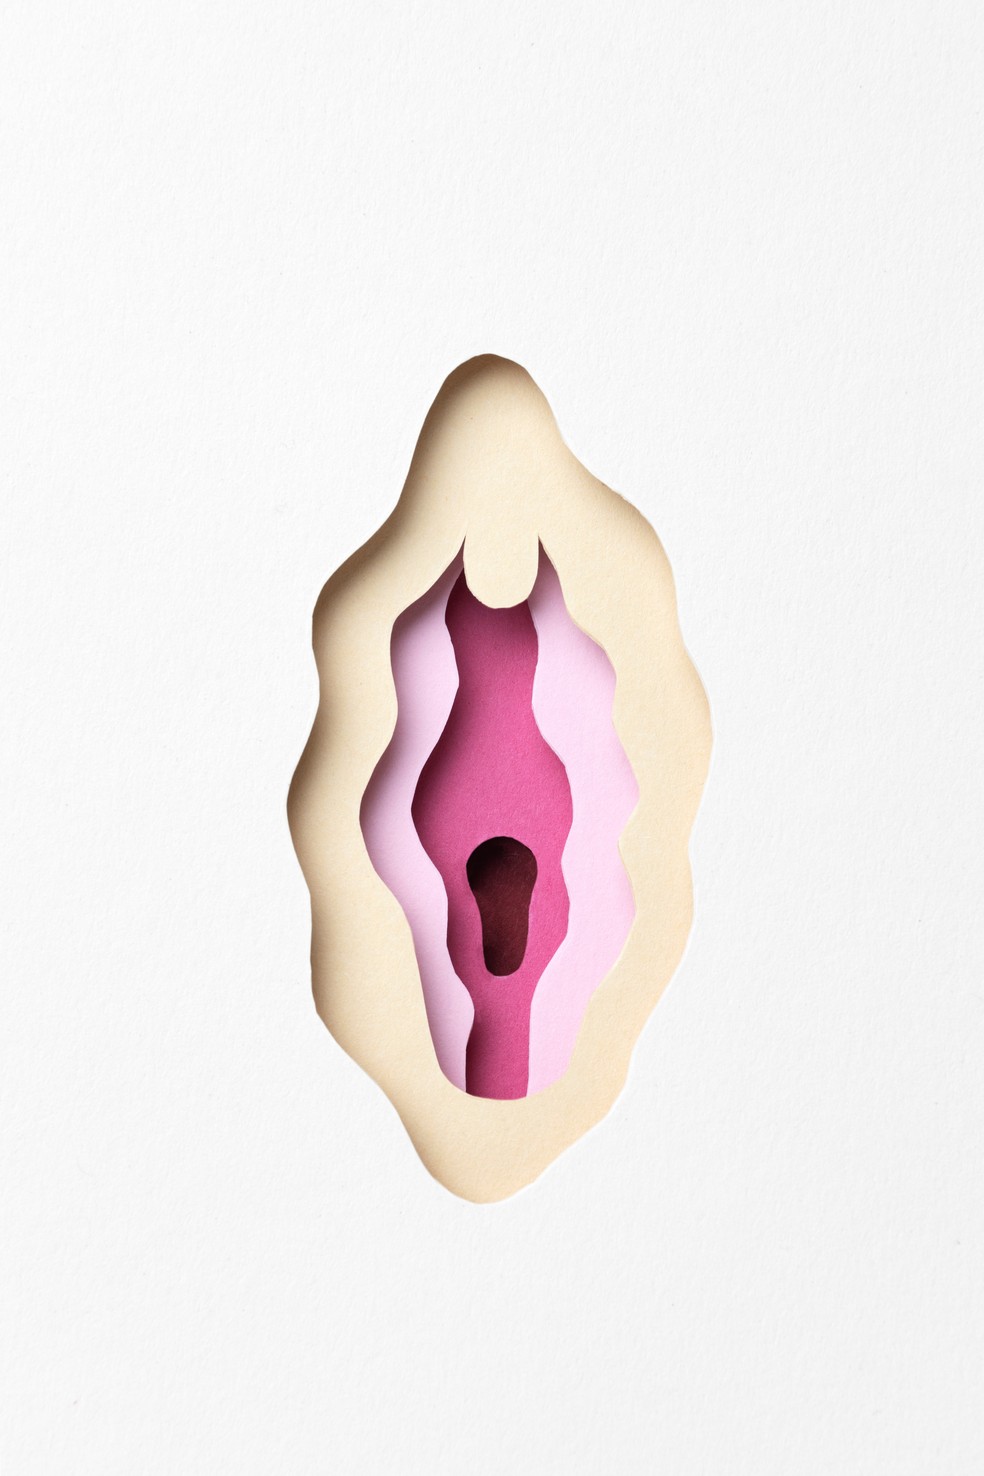 Conceito de menstruação em rosa, vista superior